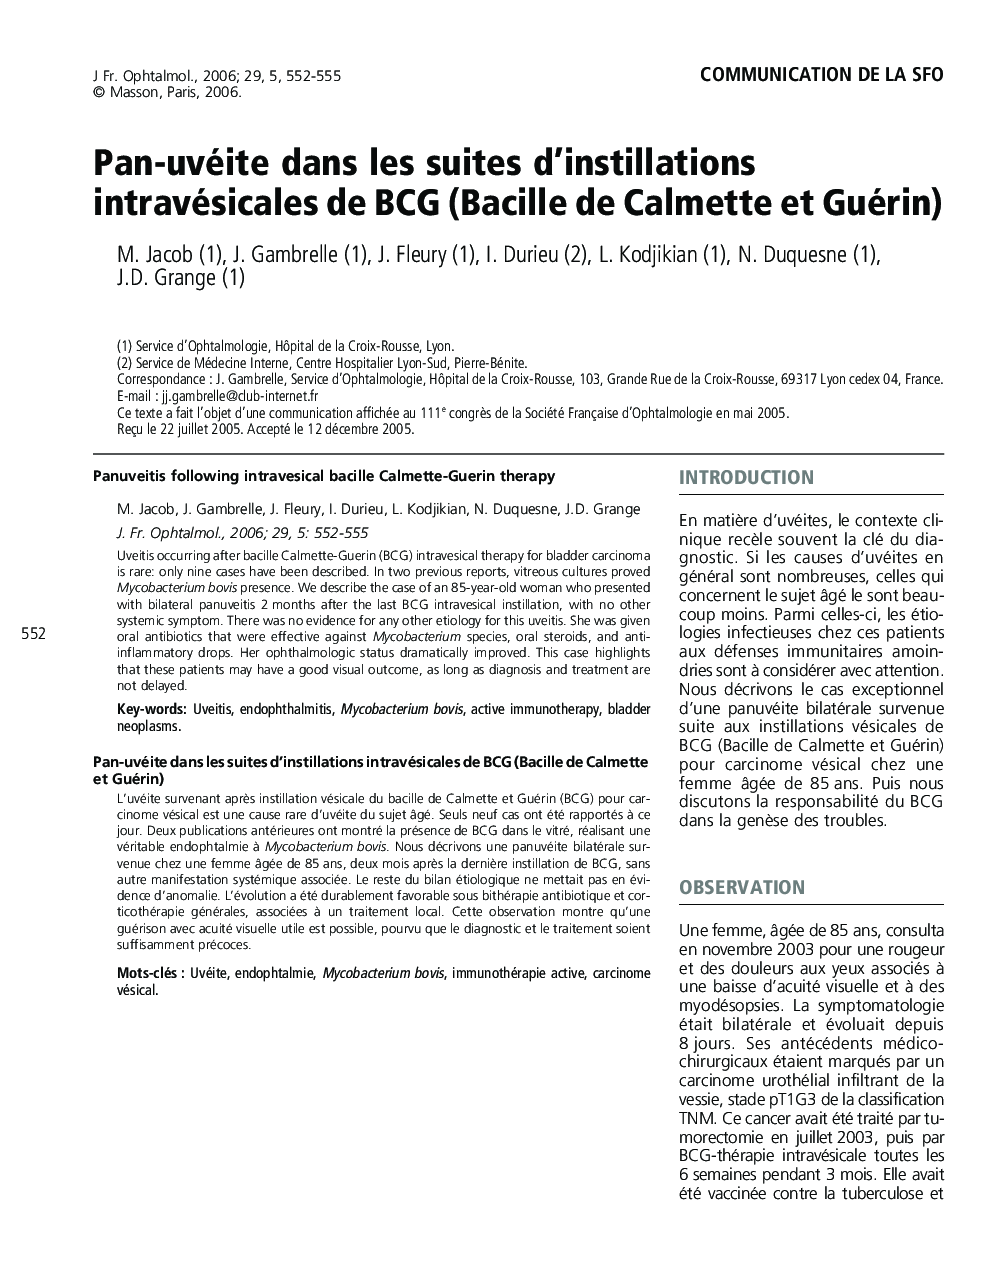 Pan-uvéite dans les suites d'instillations intravésicales de BCG (Bacille de Calmette et Guérin)